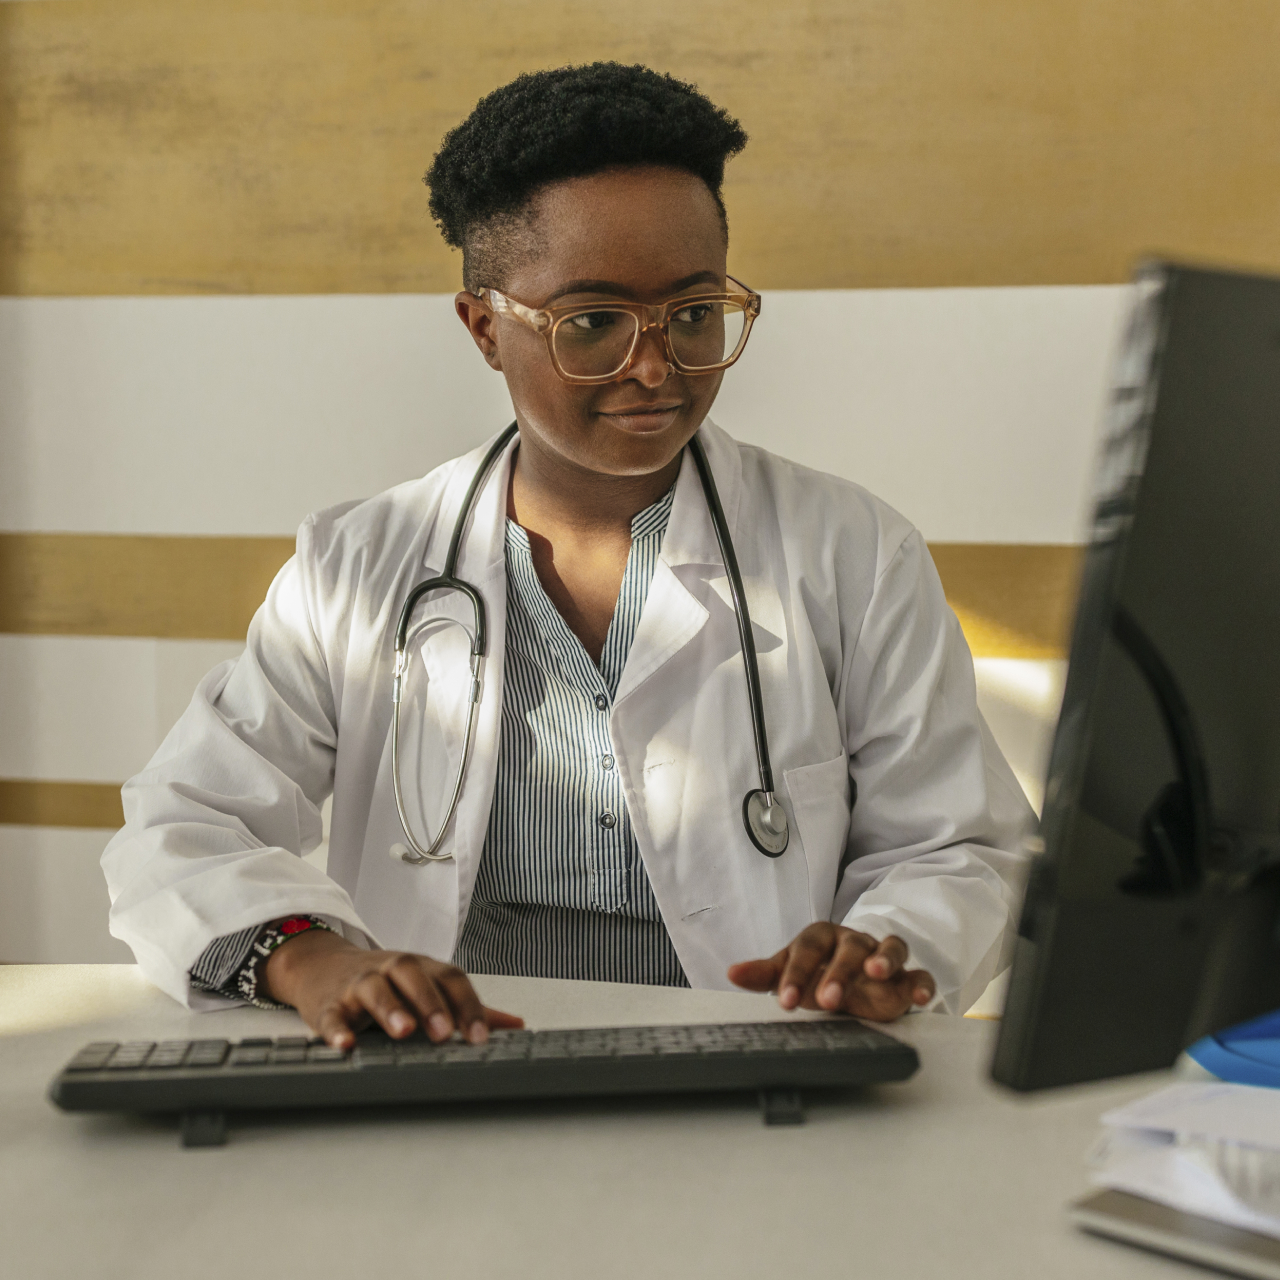 Eine Ärztin im Arztkittel mit einem Stethoskop um den Hals, die am Schreibtisch sitzt und an einem Computer schreibt.